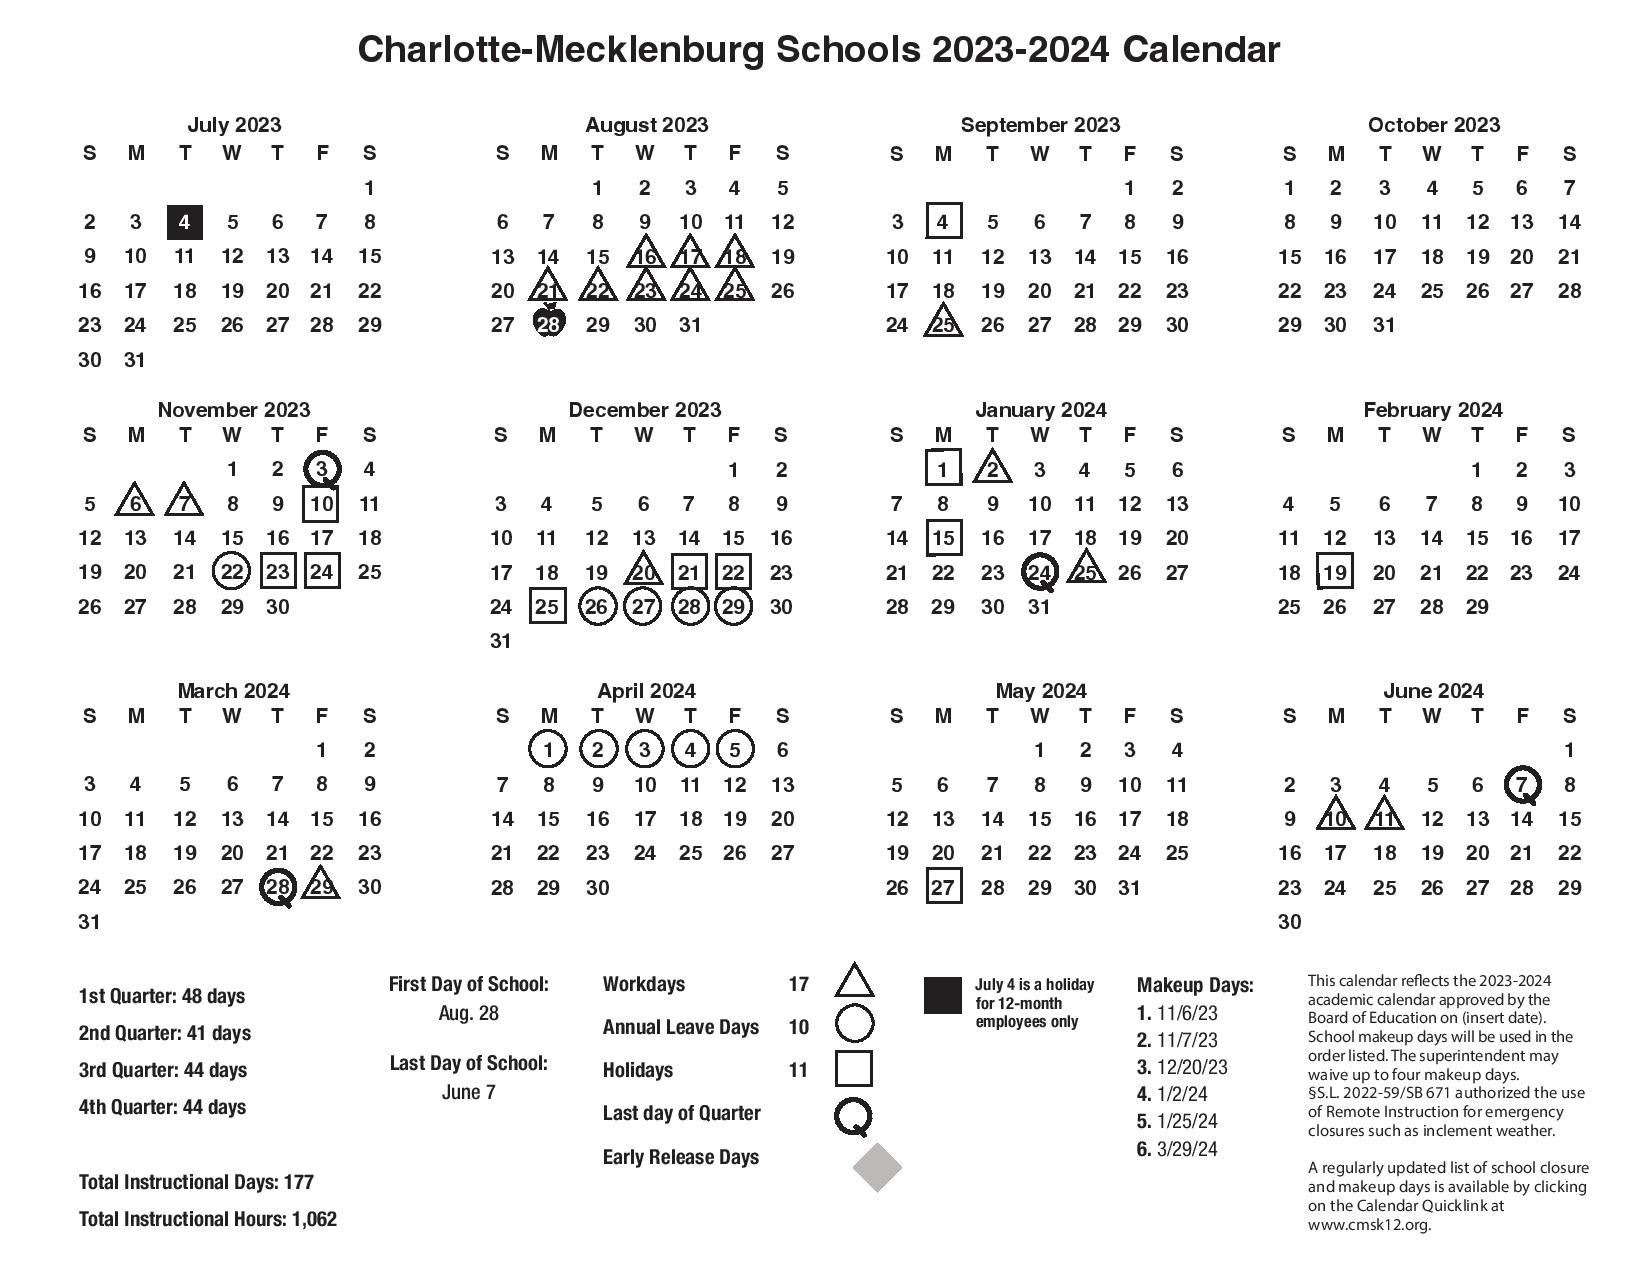 cms-schools-calendar-2023-2024-charlotte-mecklenburg-schools